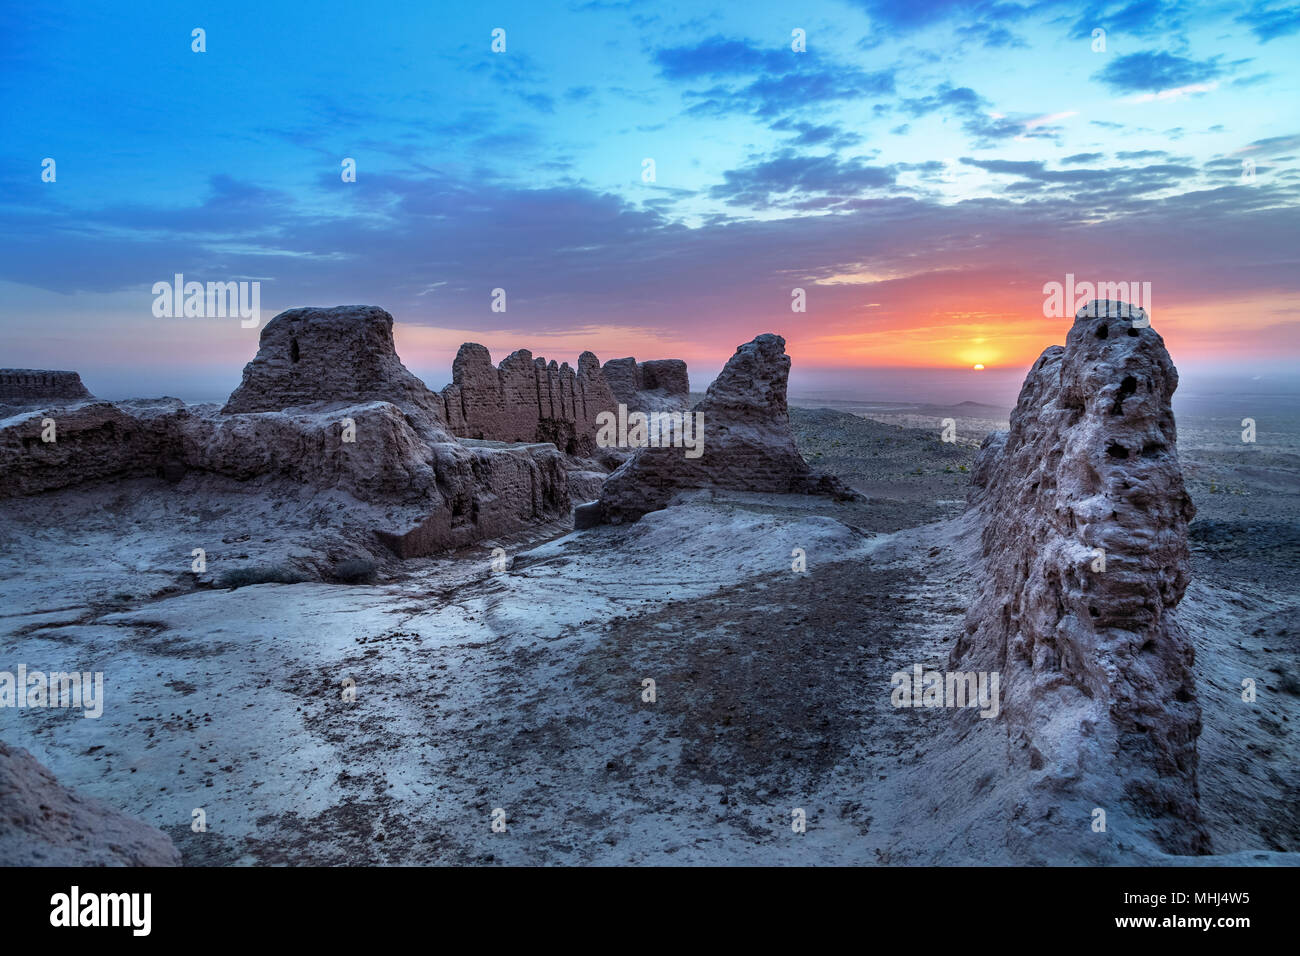 Sunrise over abandoned ruins of ancient Khorezm fortress Ayaz Kala in Kyzylkum desert, Uzbekistan Stock Photo